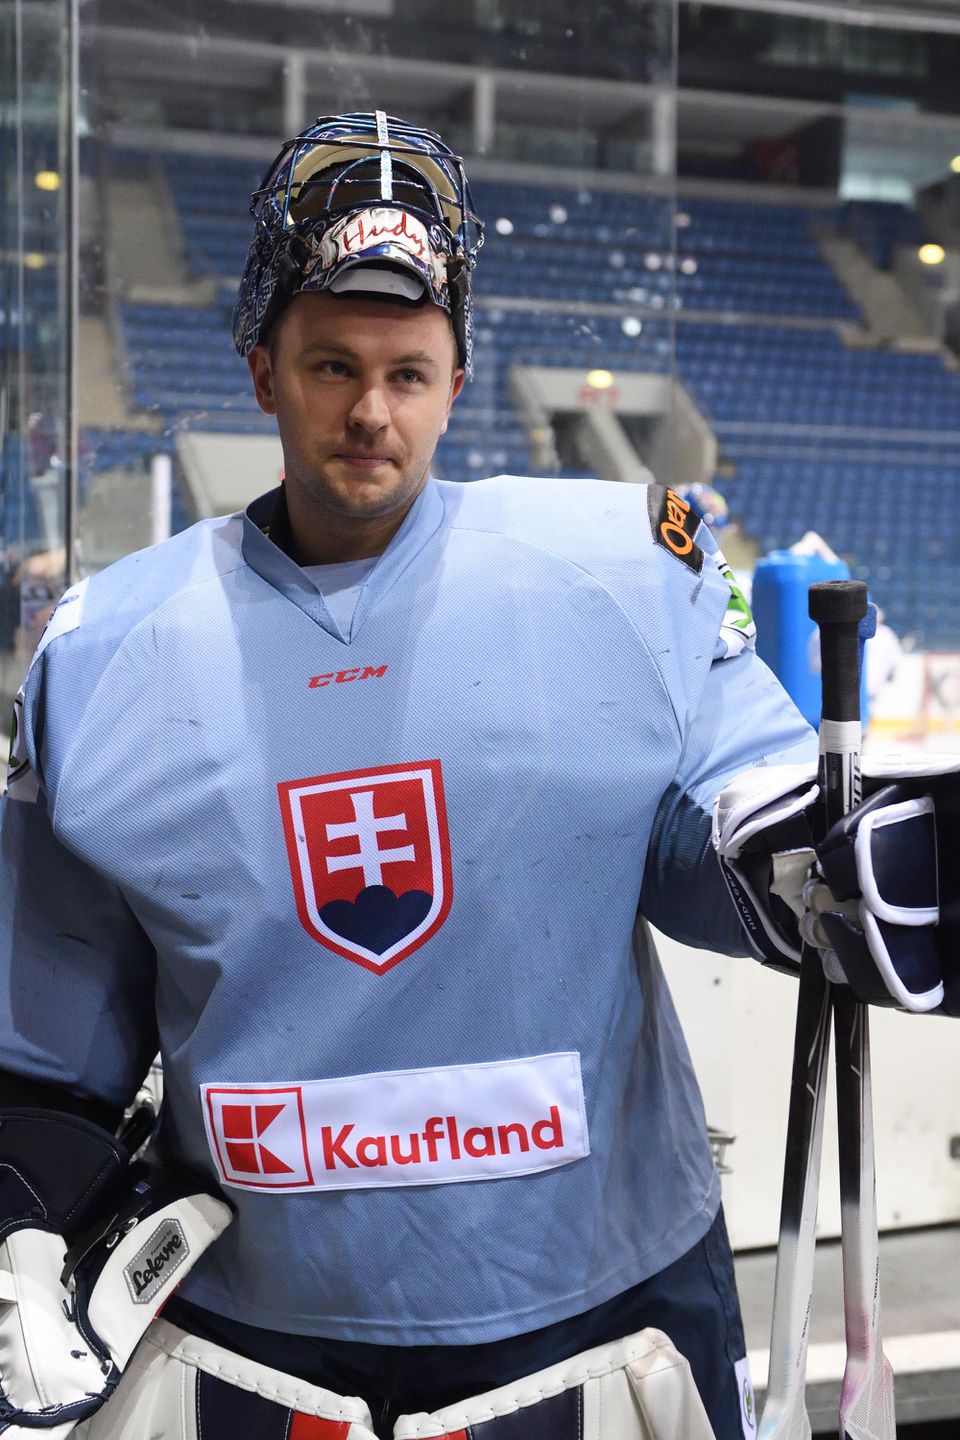 brankár slovenskej hokejovej reprezentácie Július Hudáček počas tréningu